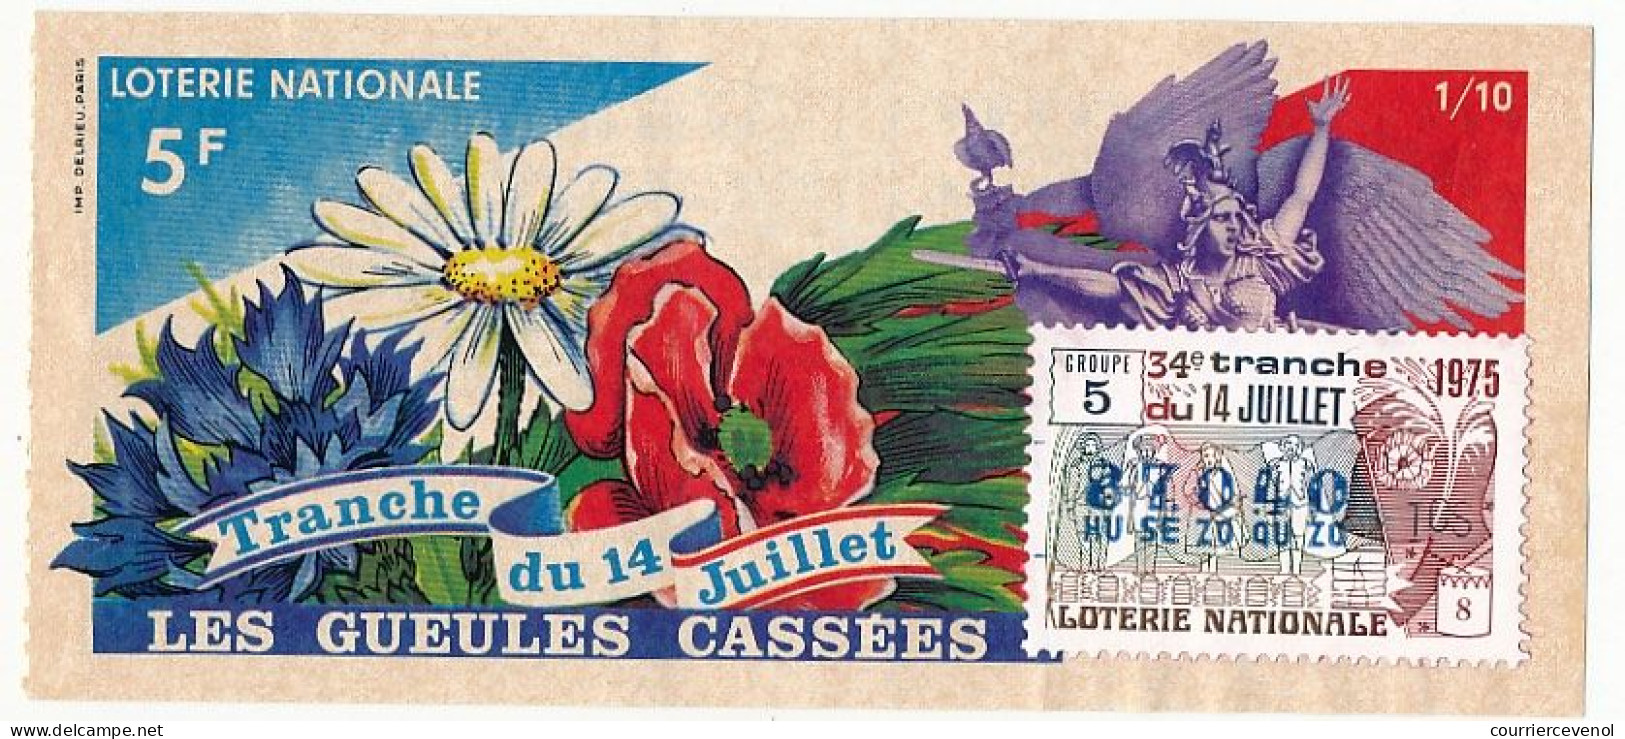 FRANCE - Loterie Nationale - Tranche Du 14 Juillet - Gueules Cassées - 34ème Tranche 1975 1/10ème - Lotterielose